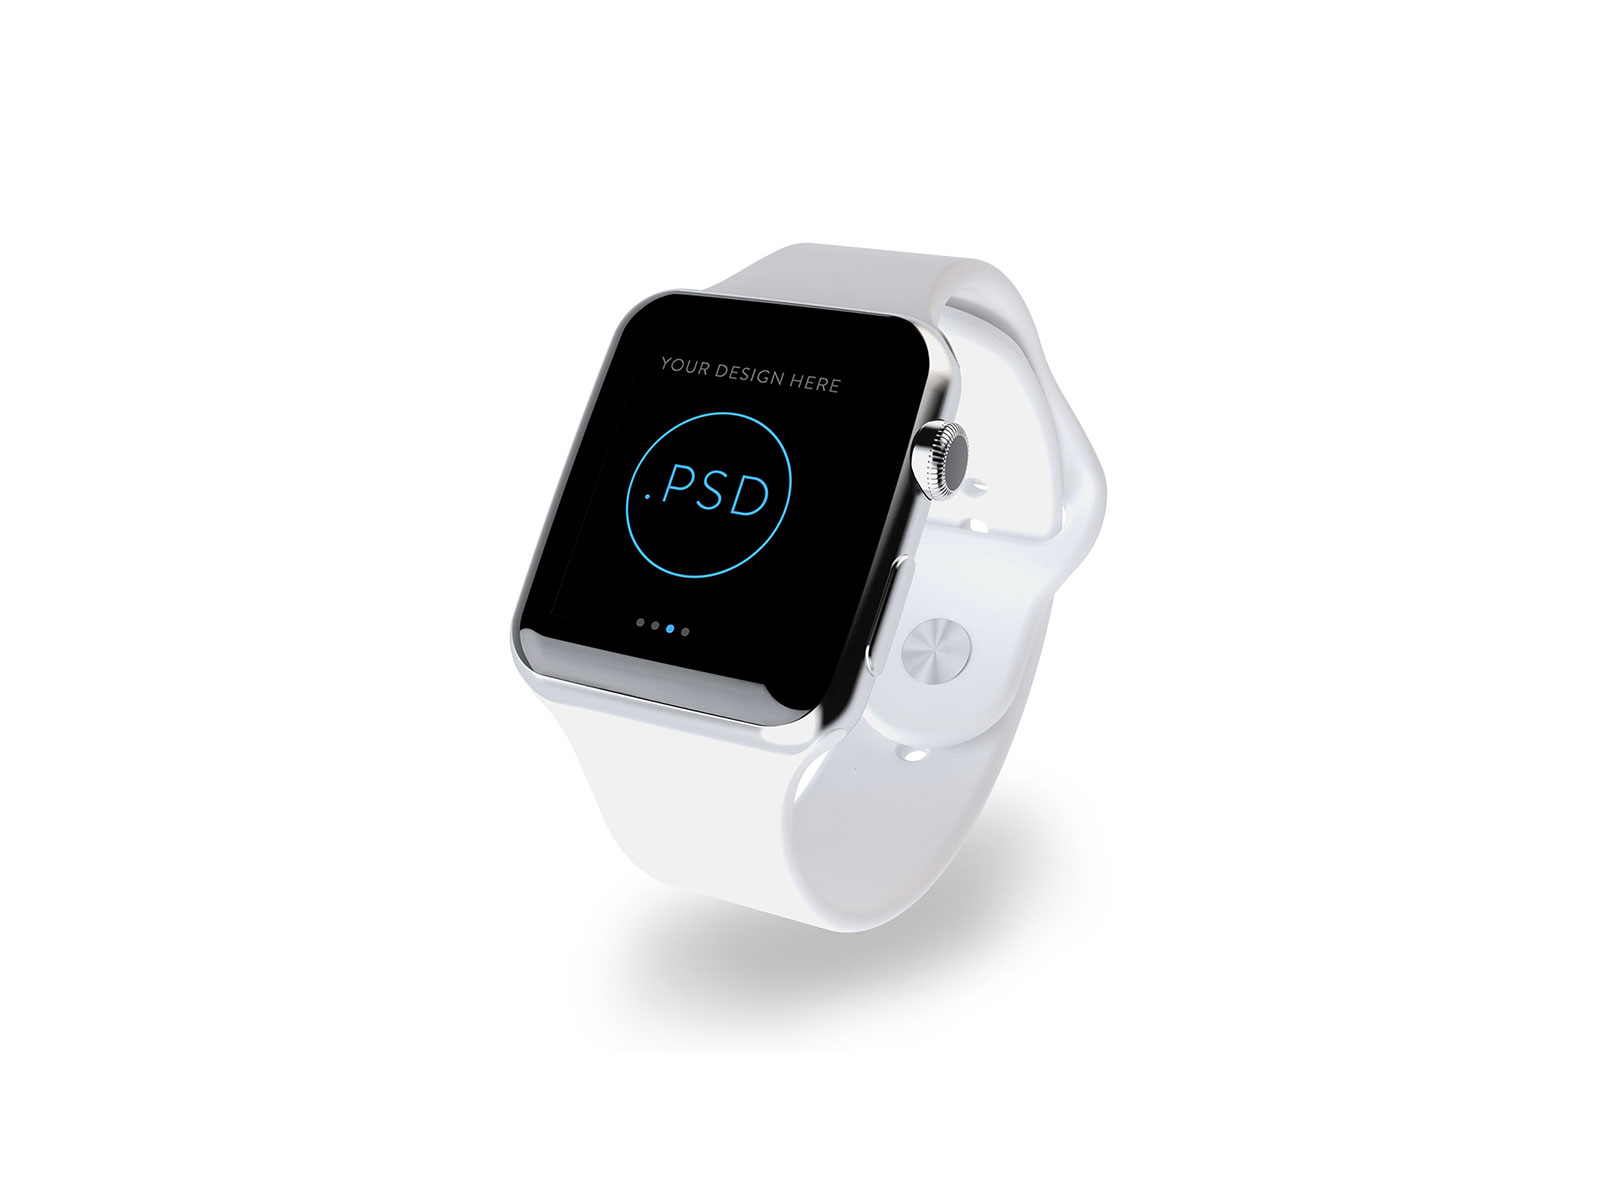 不同色系Apple Watch苹果手表.PSD模型 Apple Watch Mockup